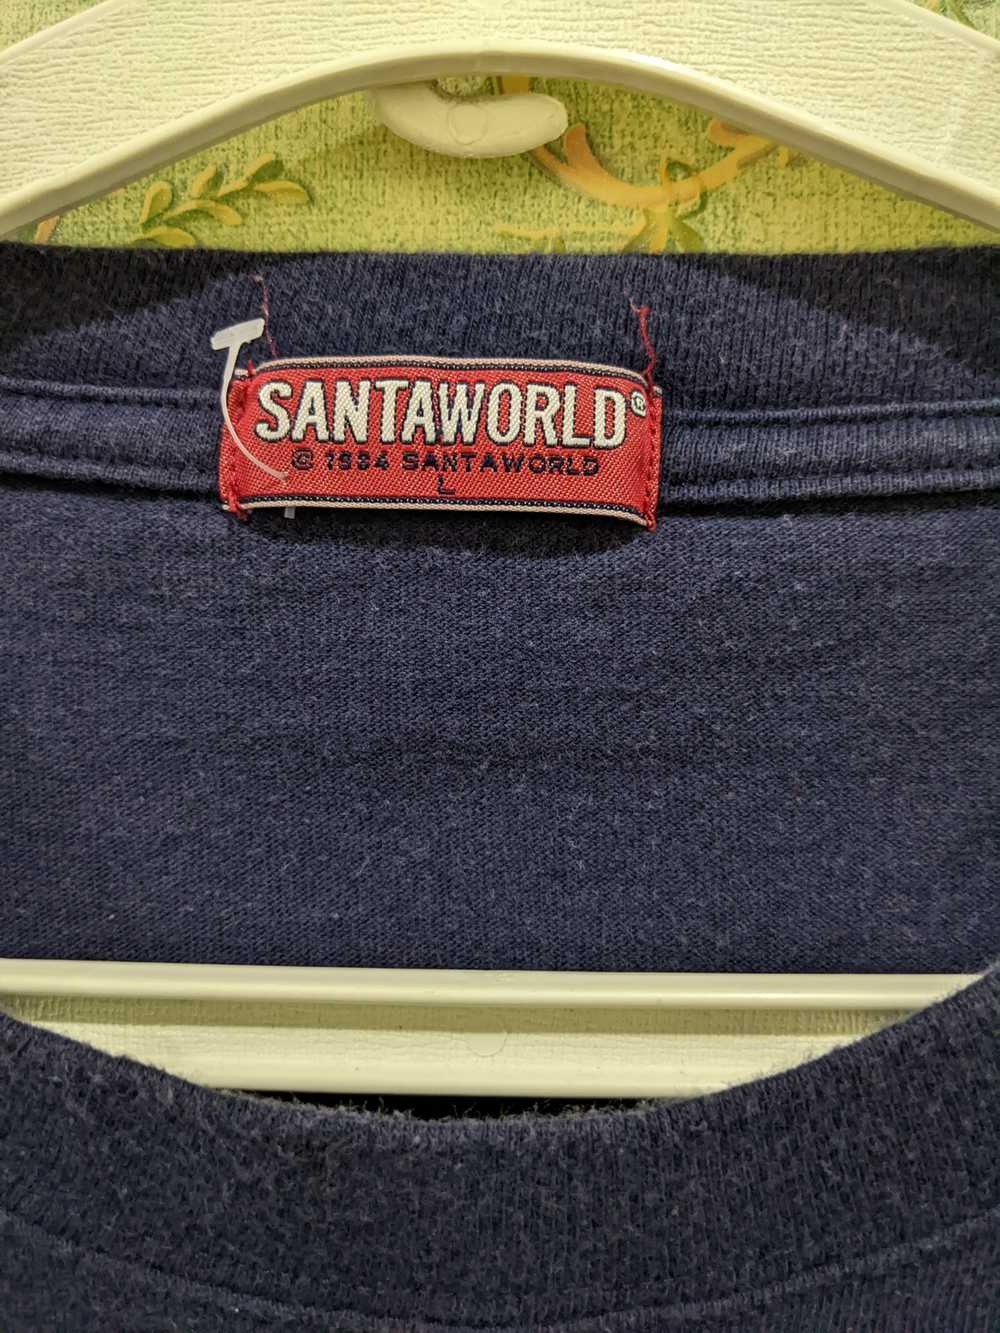 Captain Santors × Vintage Santaworld - image 3